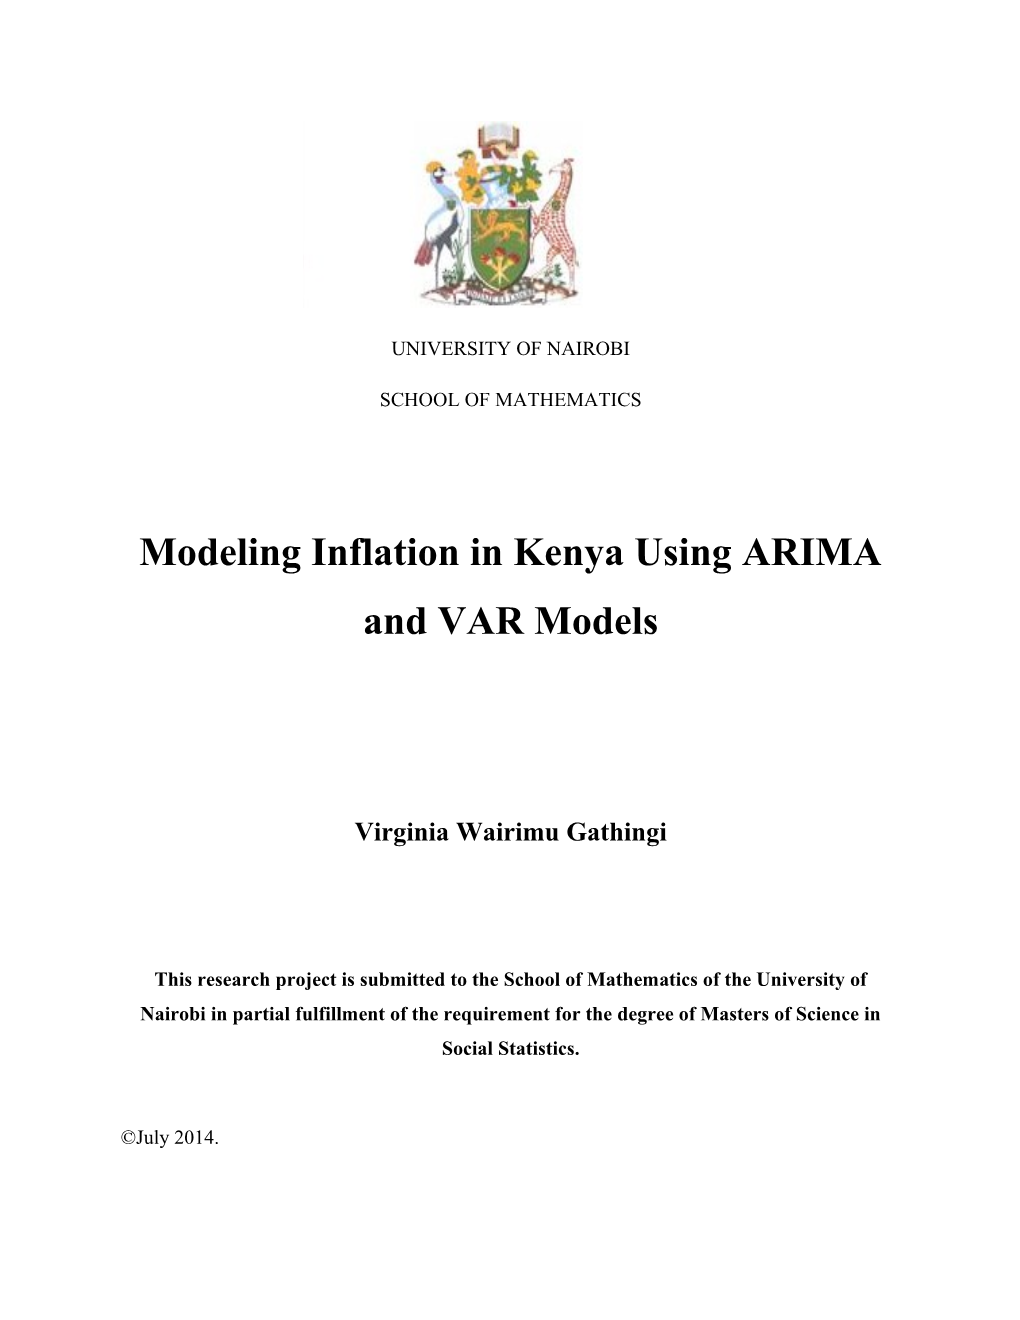 Modeling Inflation in Kenya Using ARIMA and VAR Models